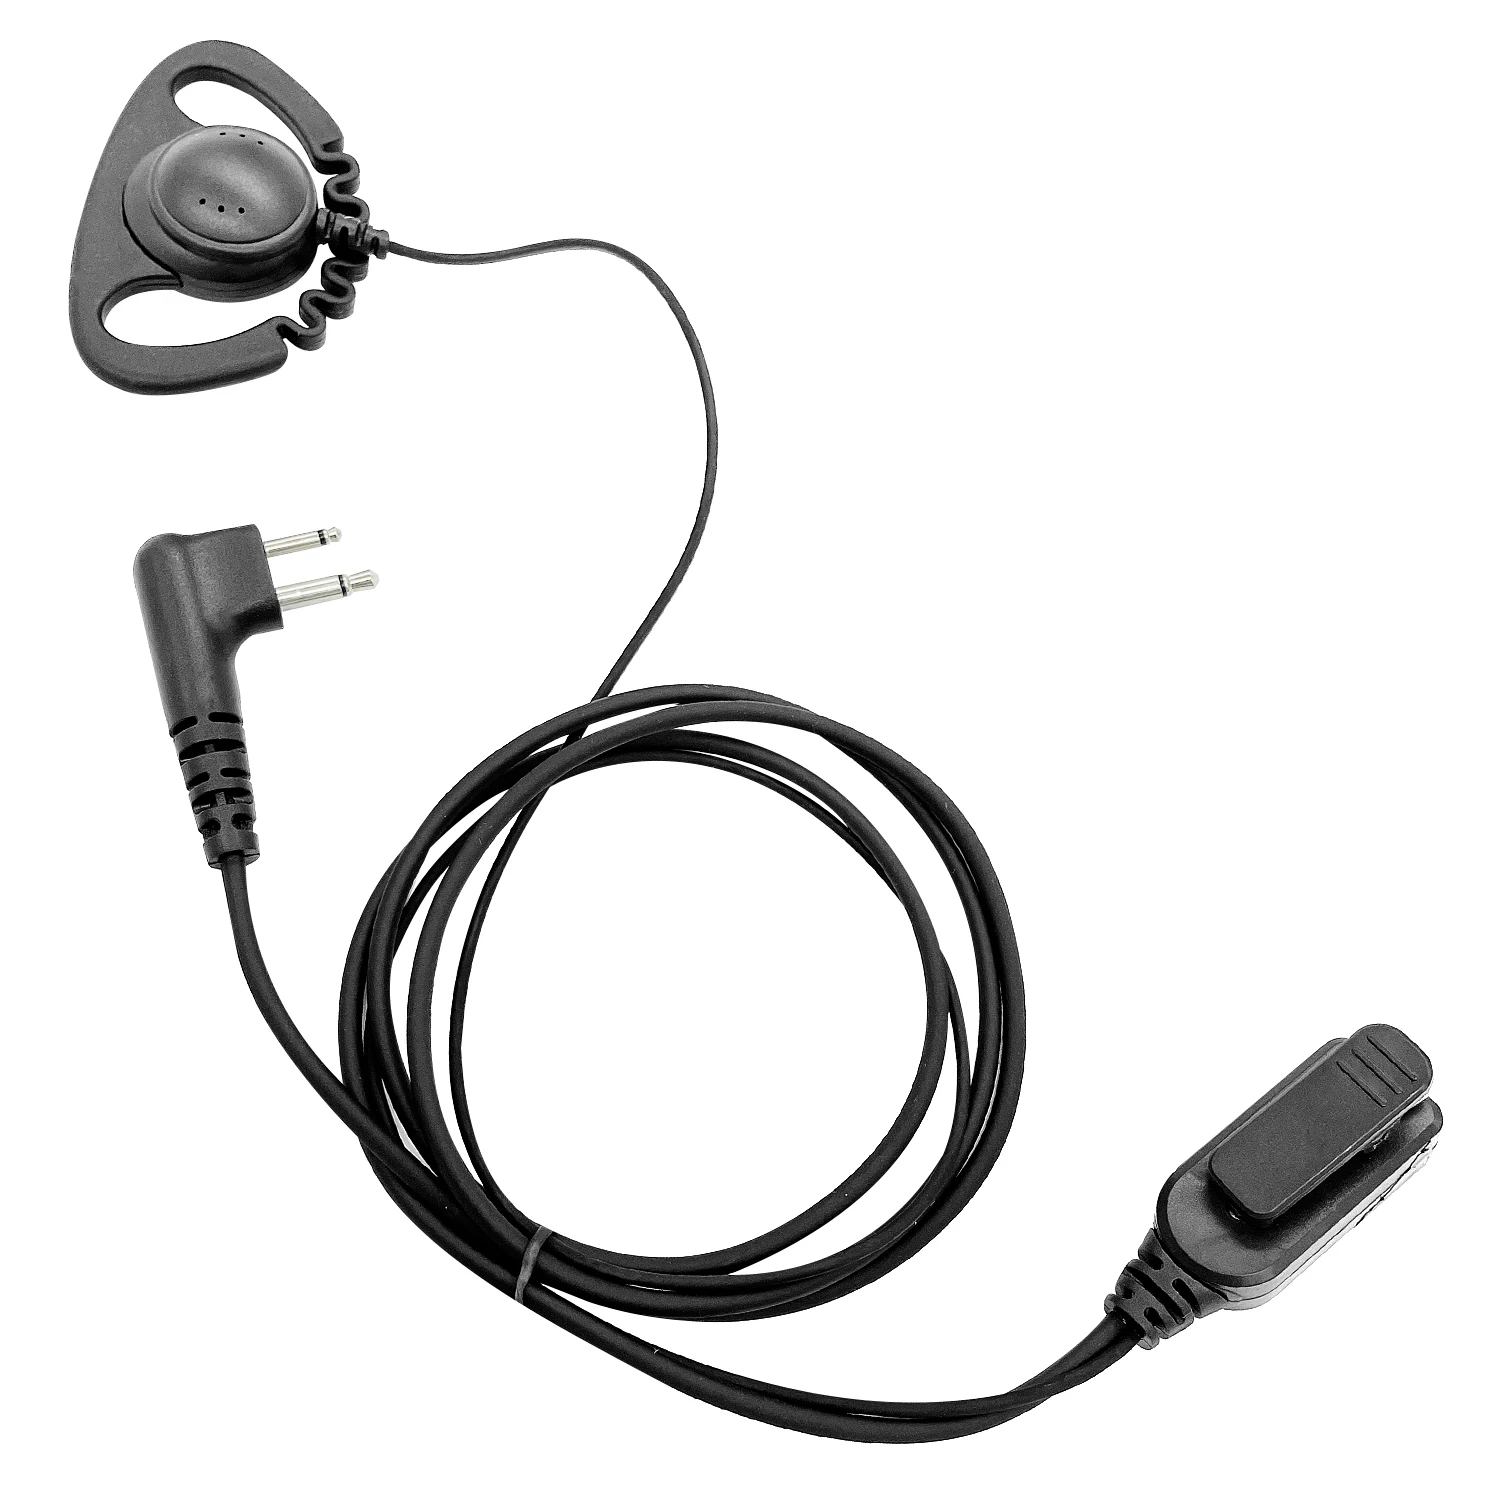 Type D ears hang walkie talkie headset Earpiece for motorola CP010,CP140,GP68,EP450,DEP450,CT150,250,450,450LS two way radios enlarge